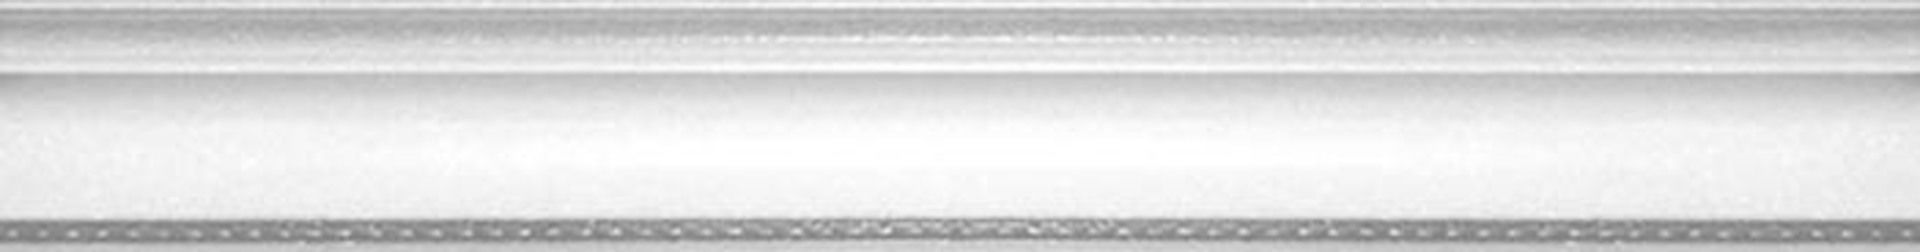 Керамическая плитка MOLD. LONDON 4*30 / коллекция BUXY-MODUS-LONDON / производитель DUAL GRES / страна Испания